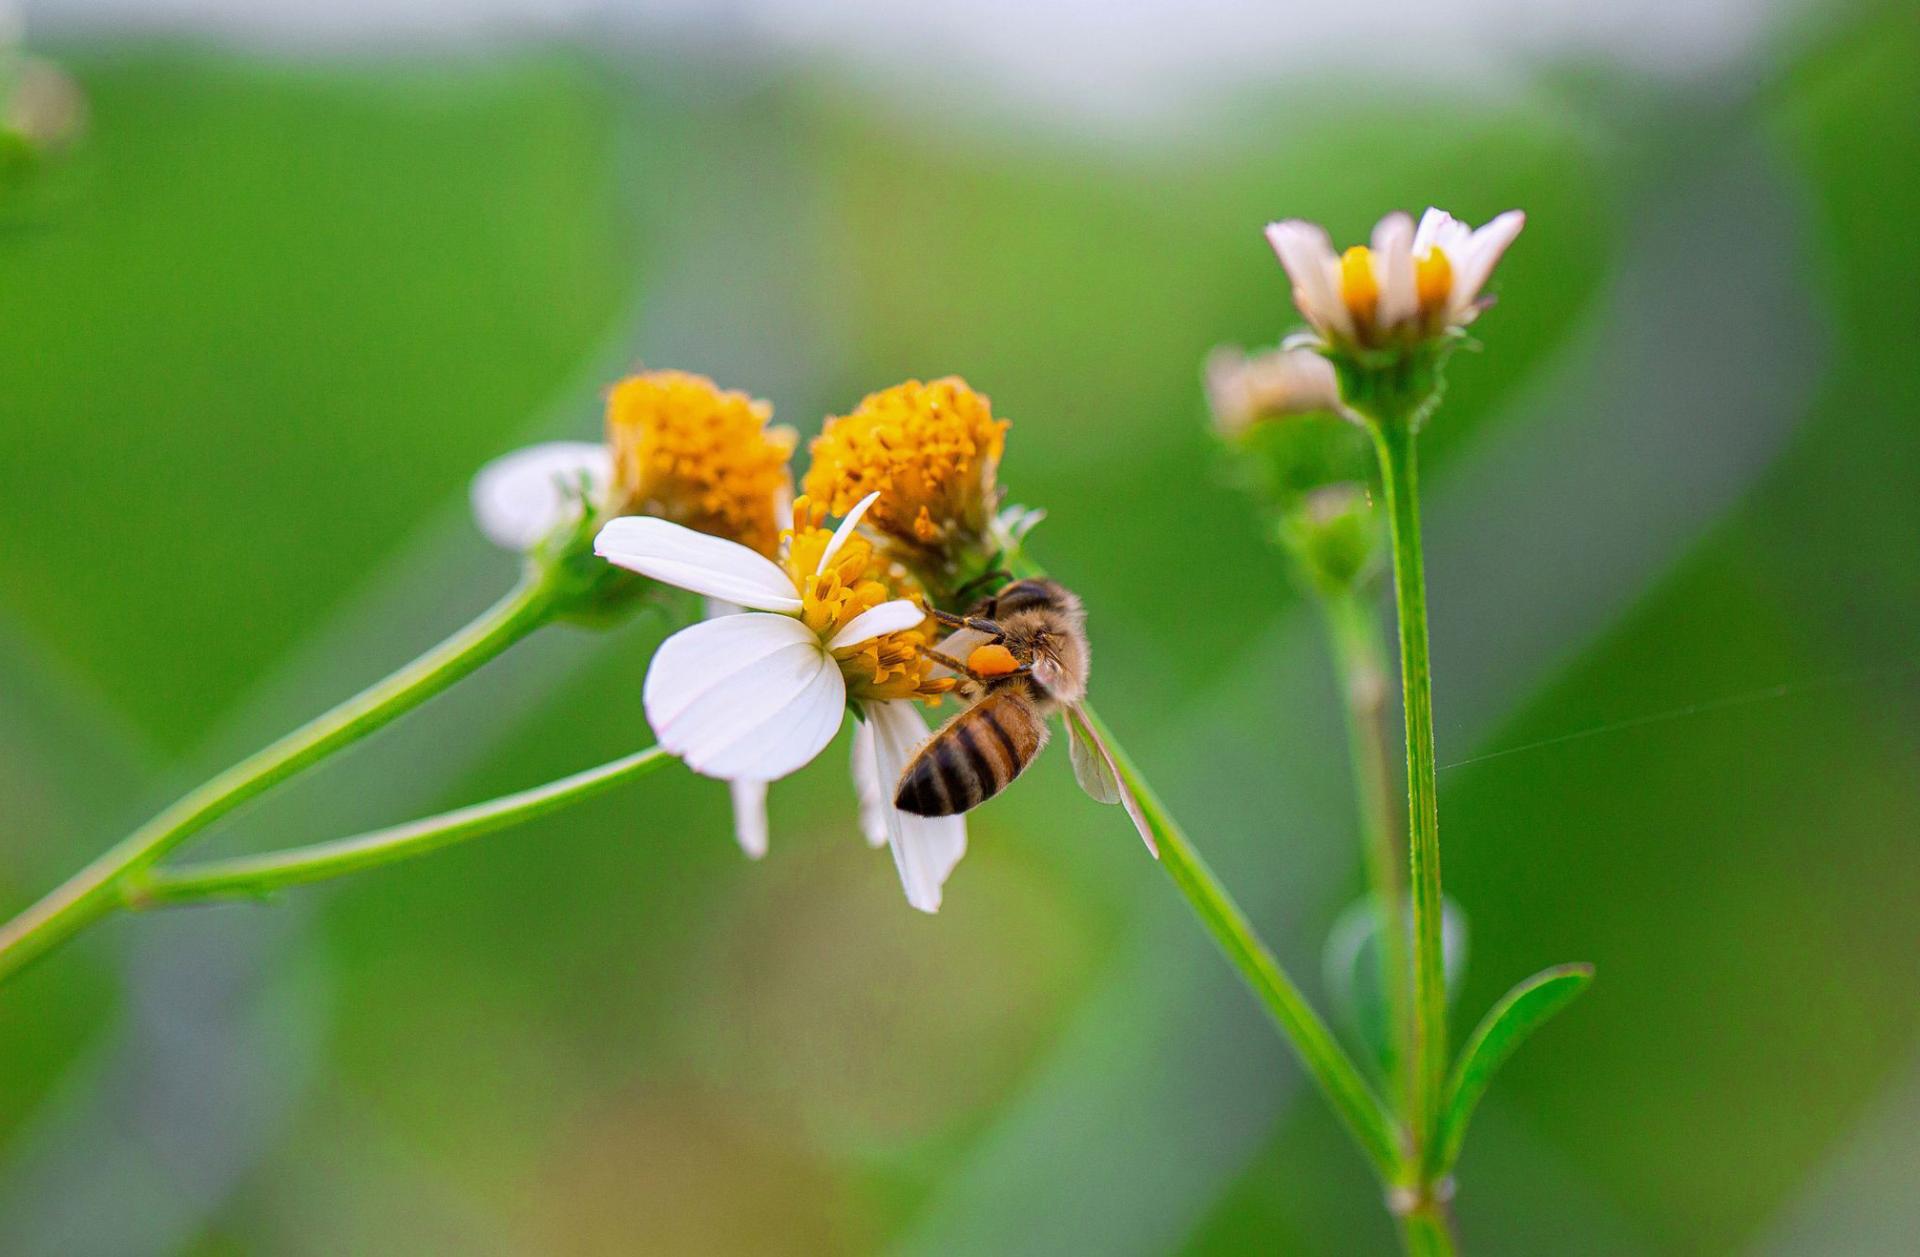 Tháng Ba mùa con ong đi lấy mật